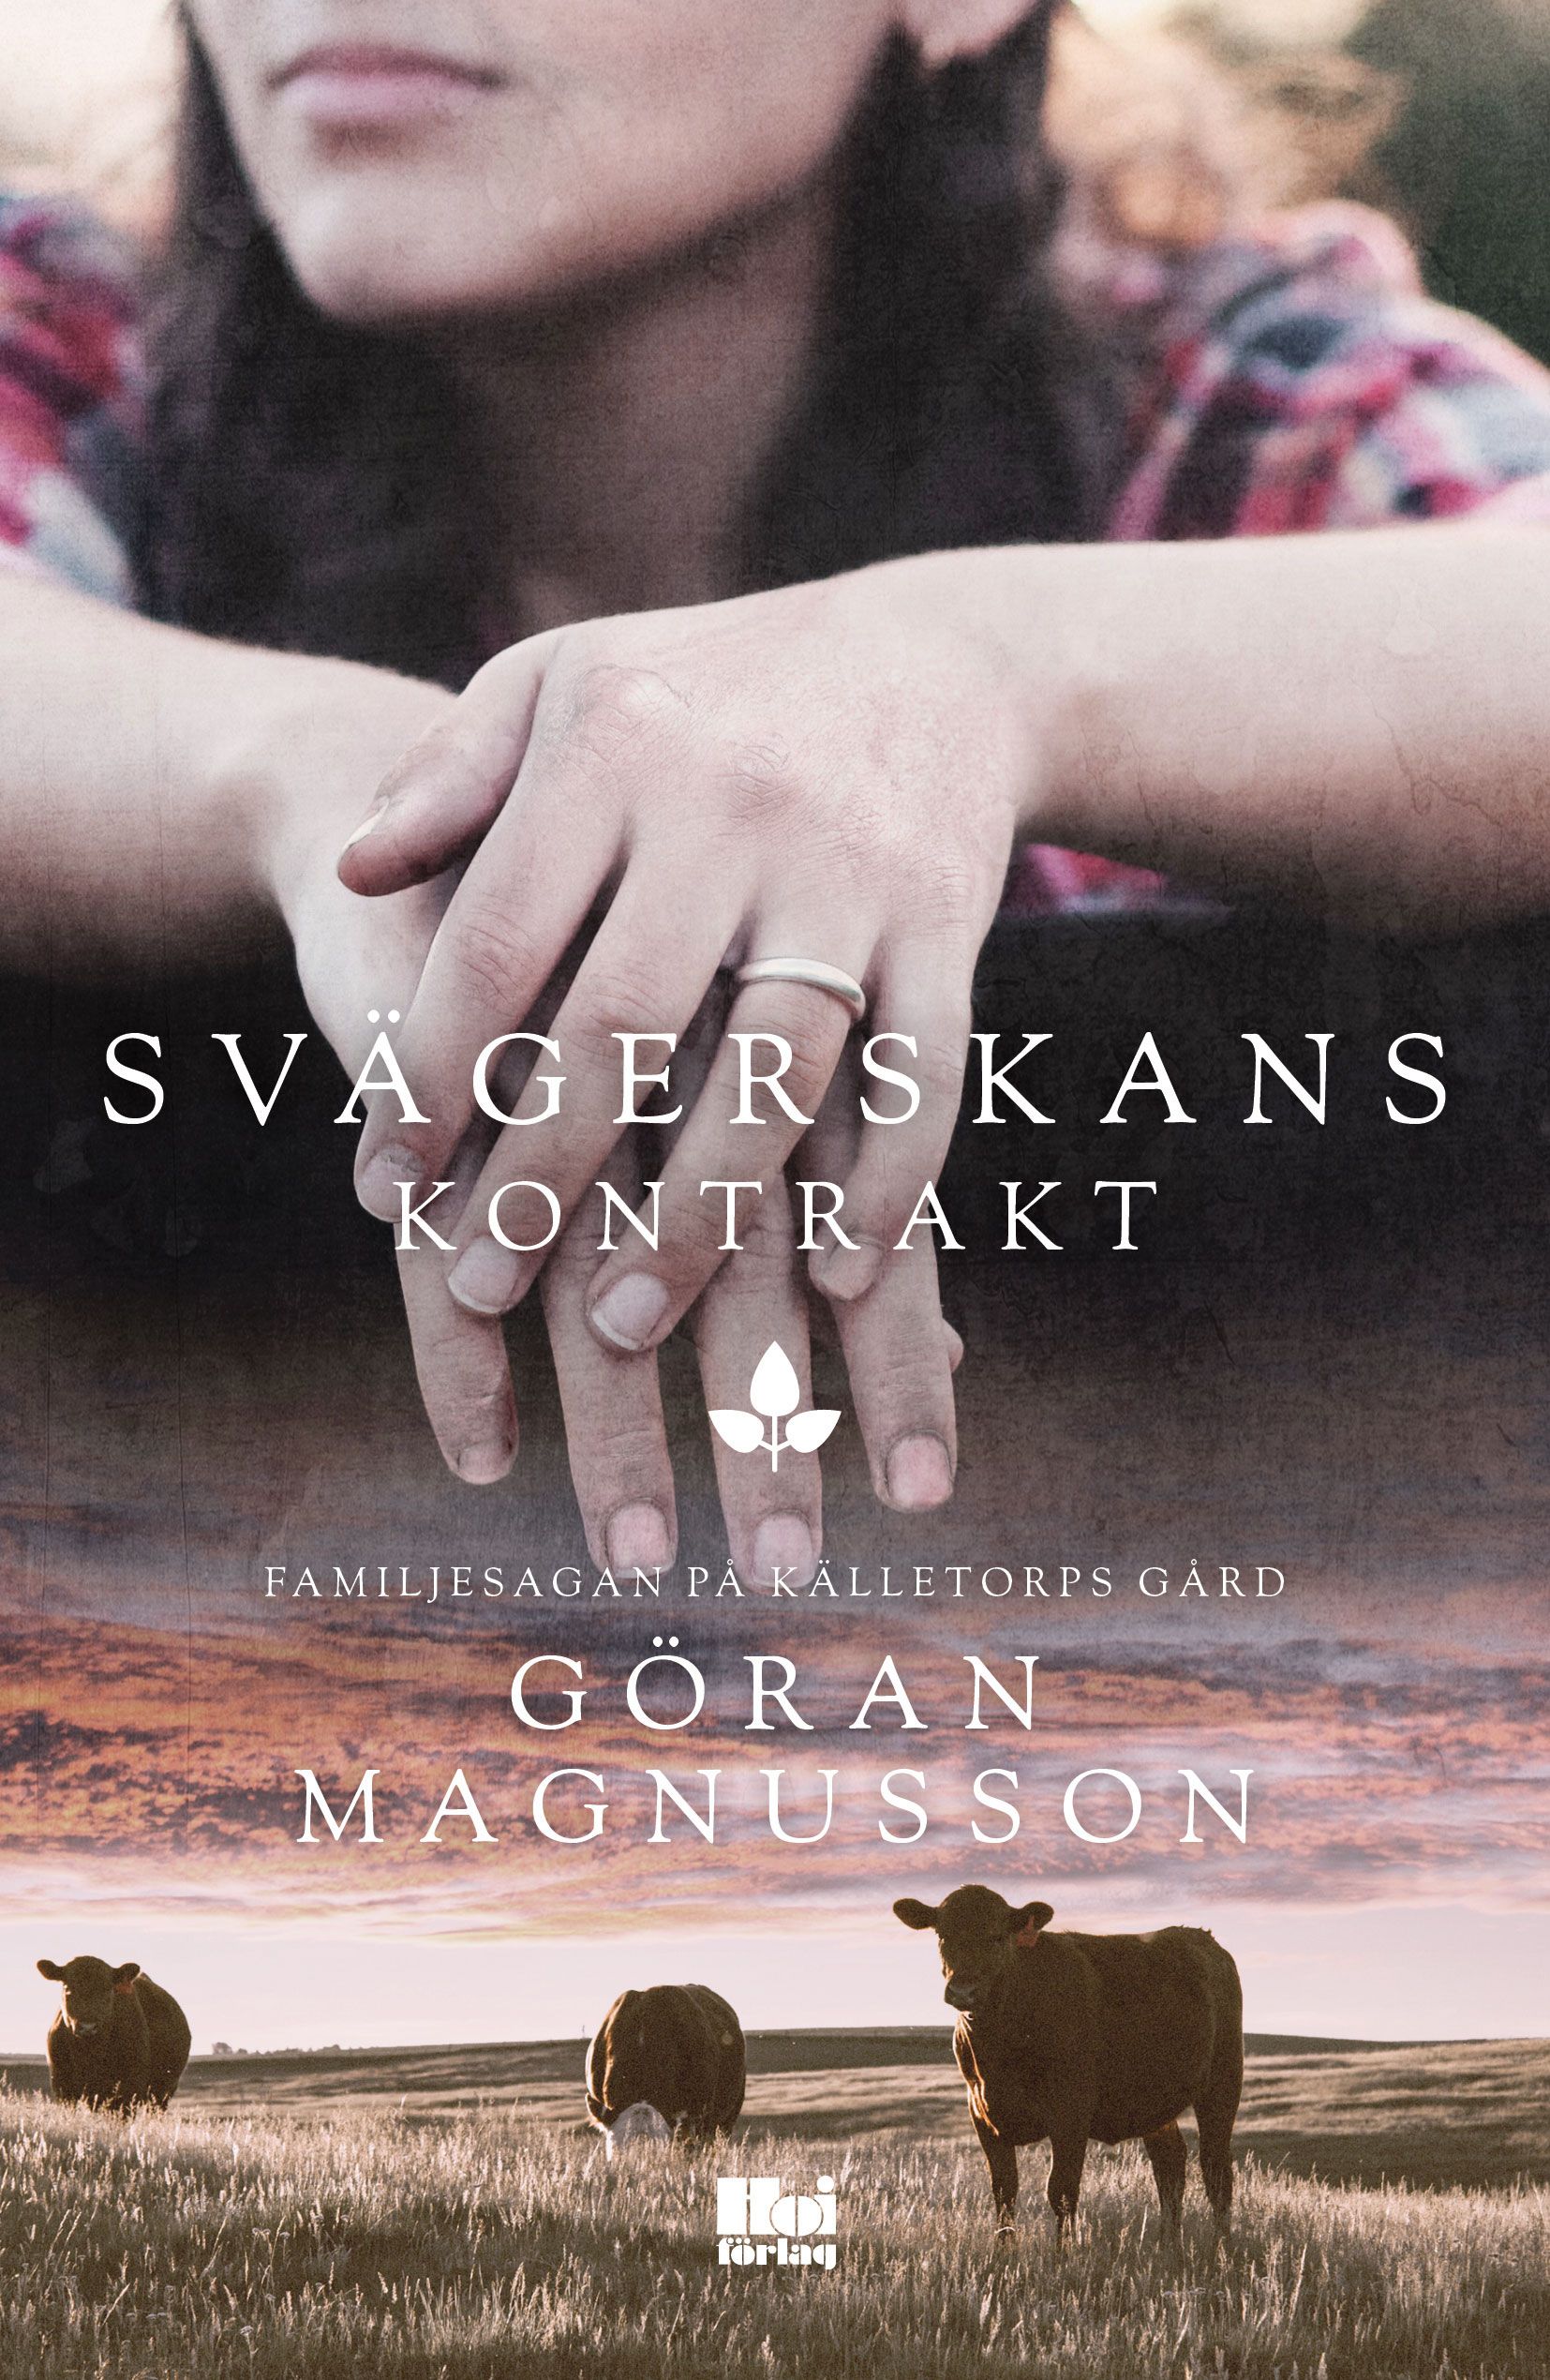 Svägerskans kontrakt, eBook by Göran Magnusson